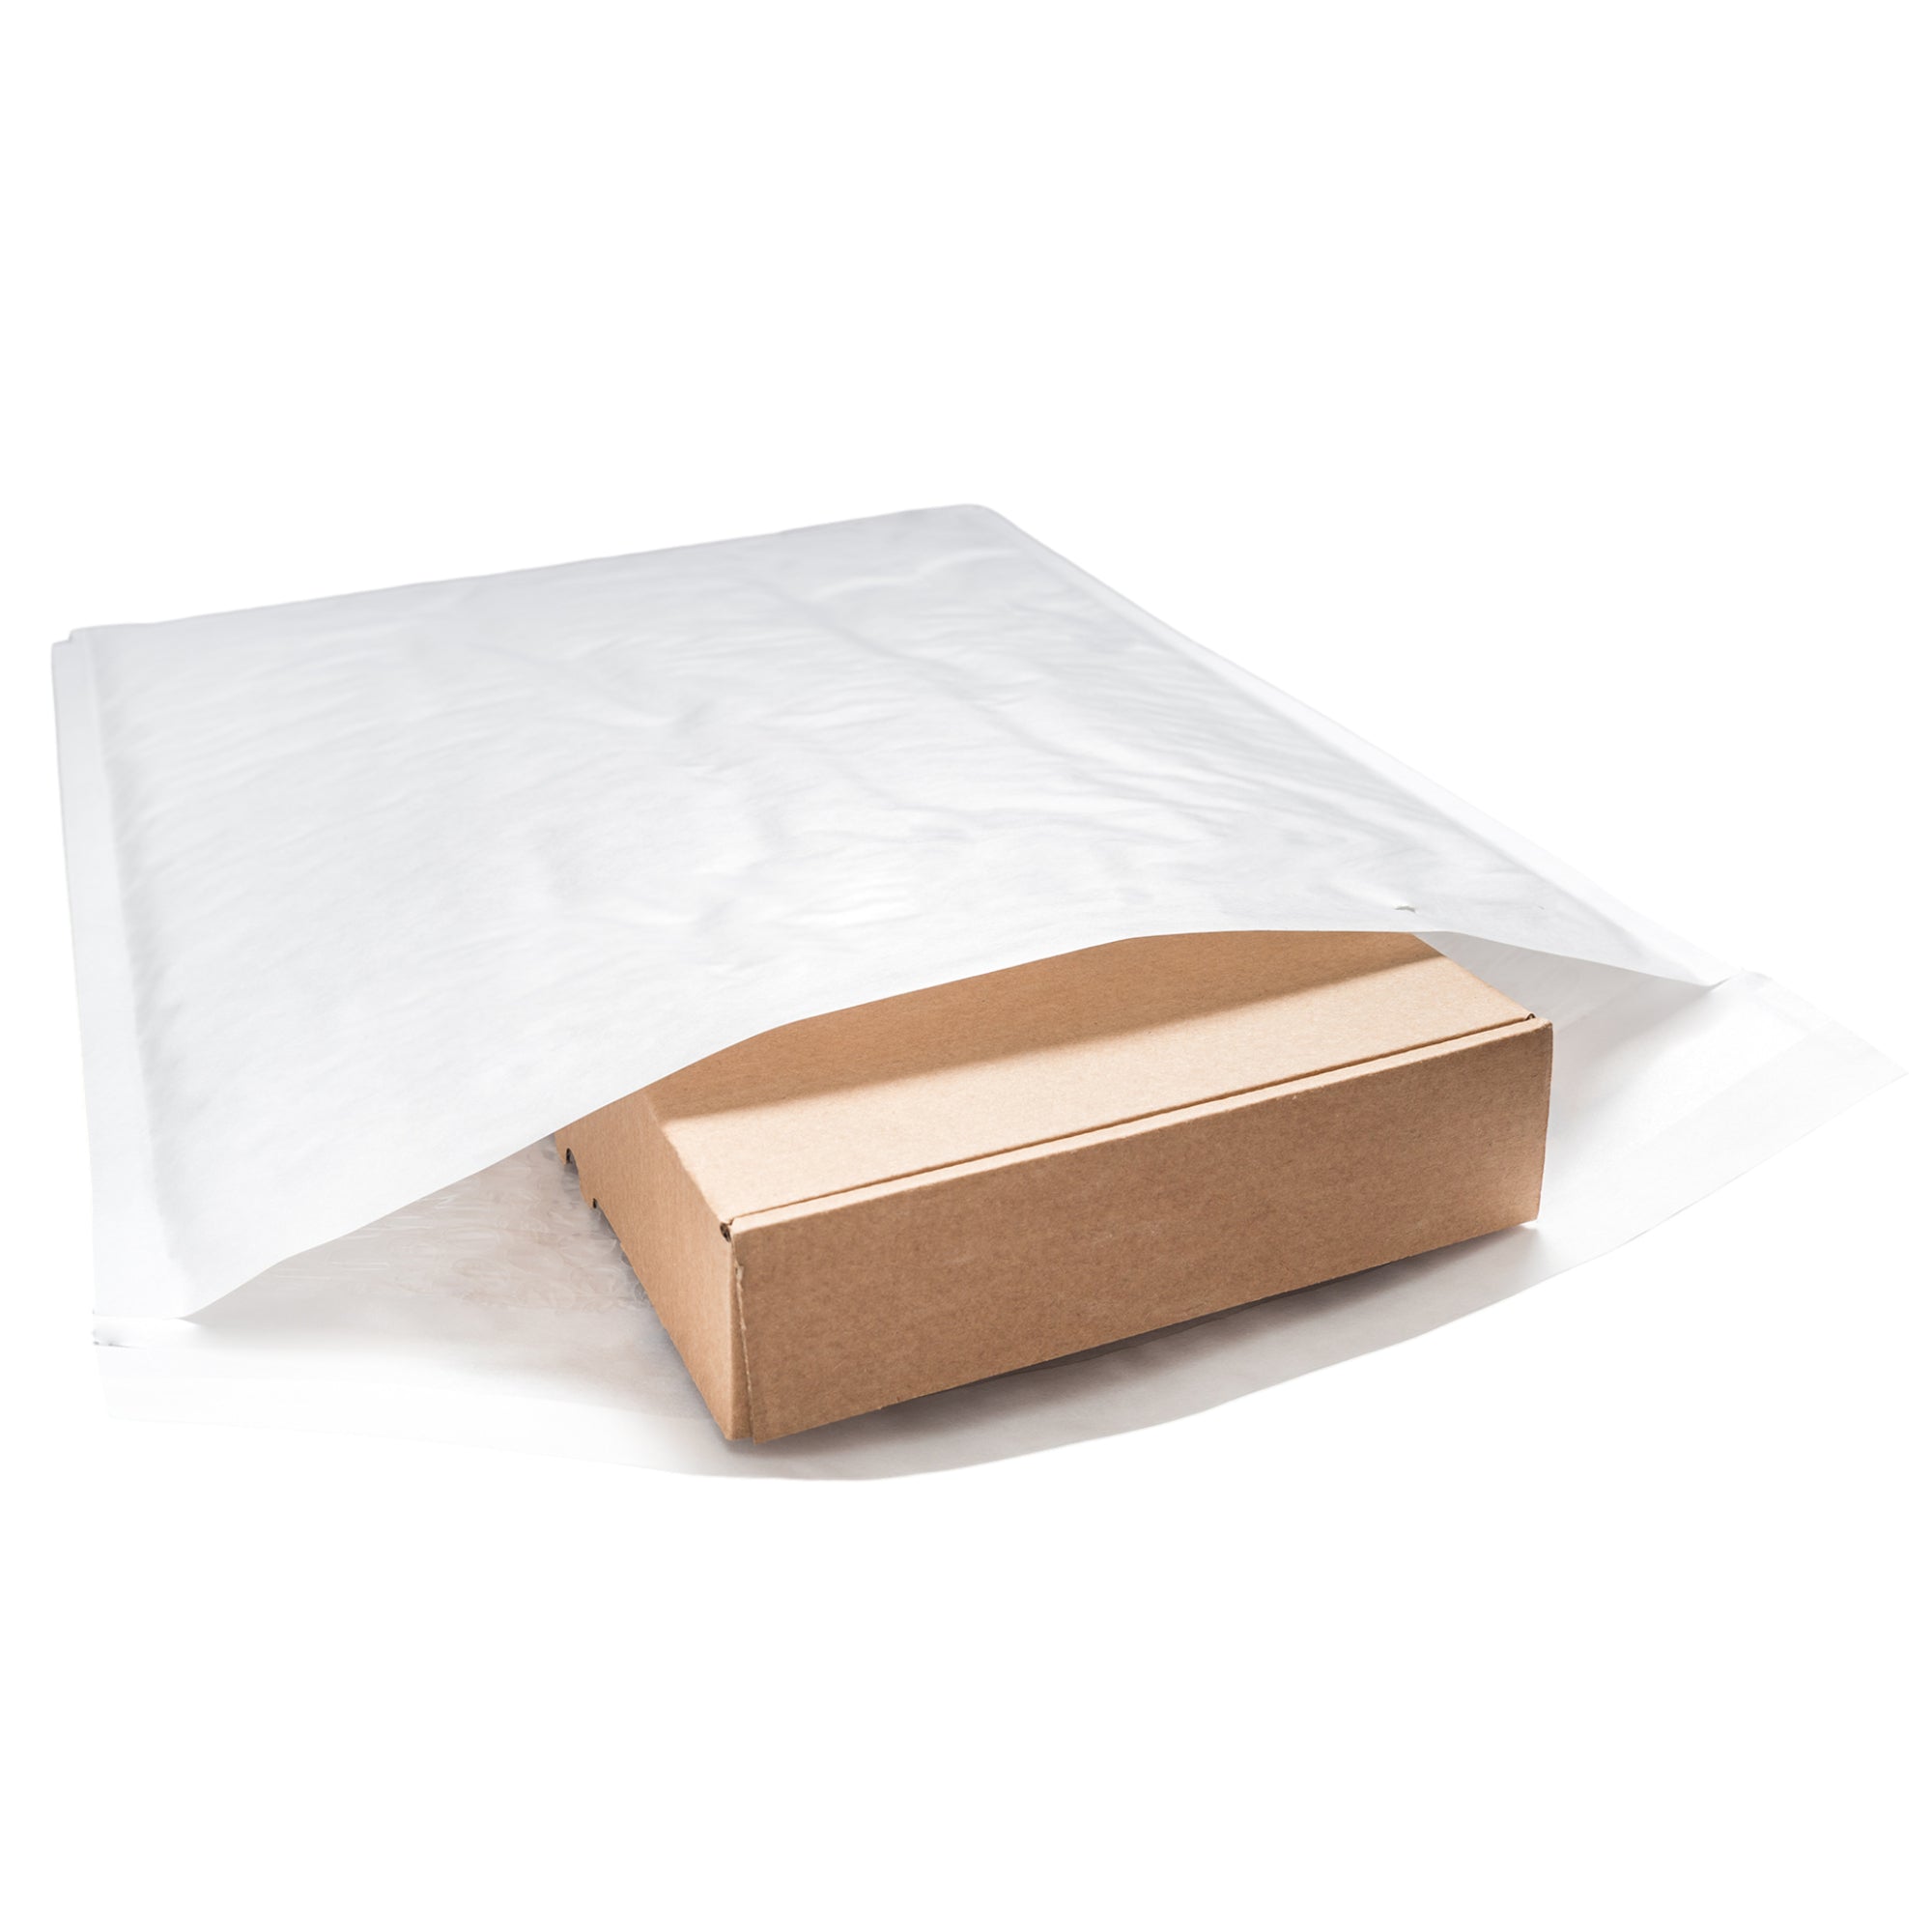 Bubble Mailer Envelope White Kraft Paper Padded Bag [230x350mm]